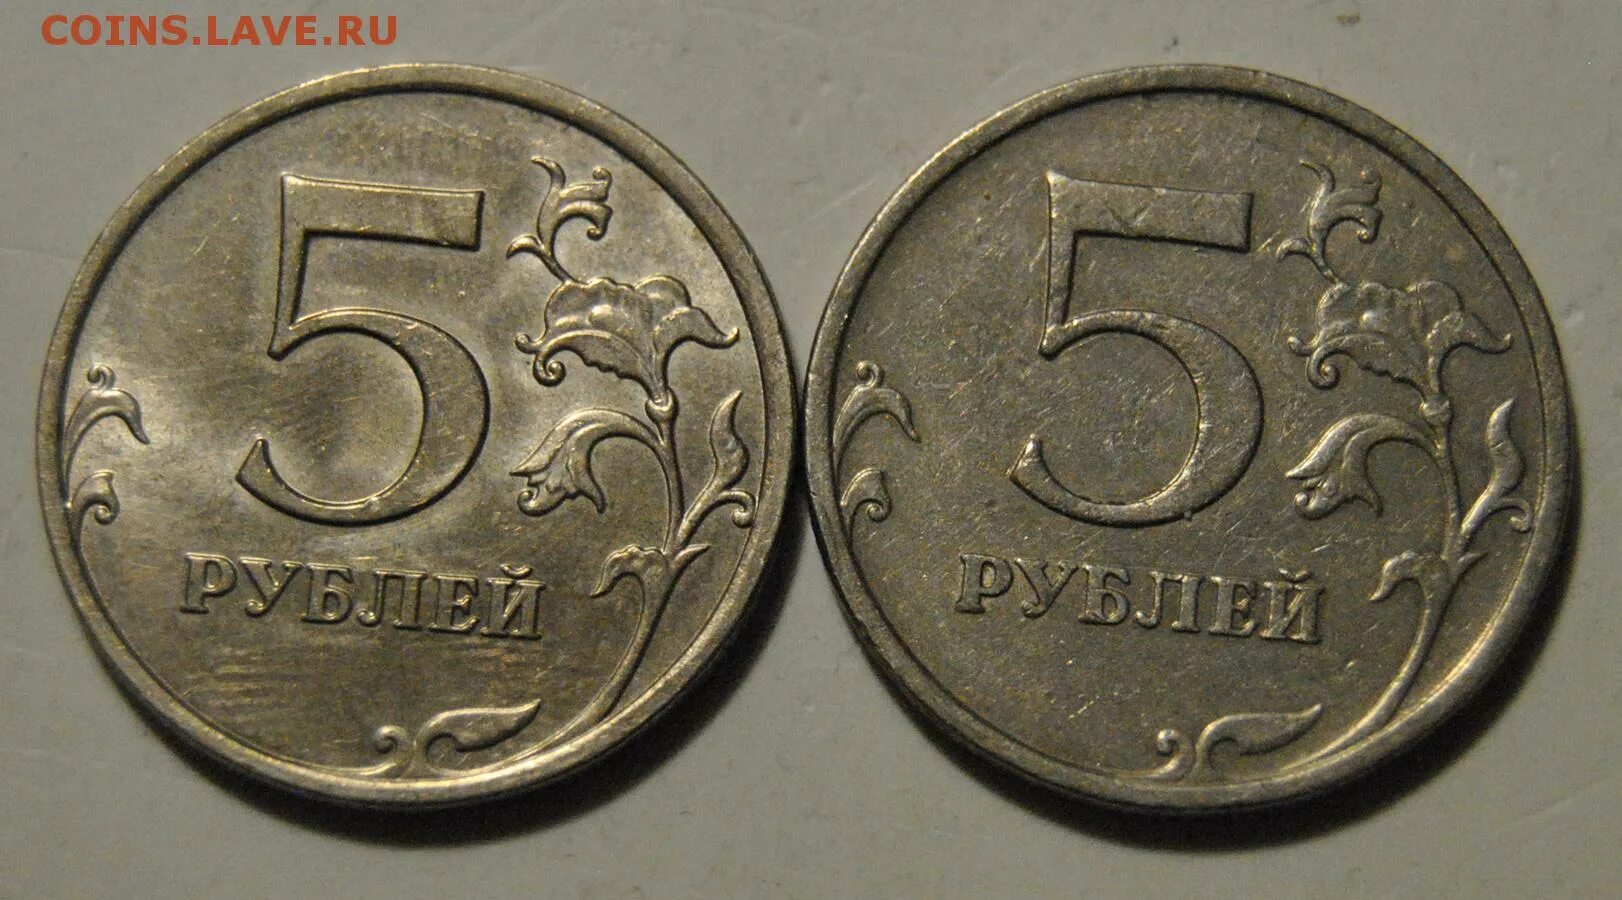 5 рублей ммд. 5 Рублей 2009 года немагнитные. 2 Рубля 2009 ММД (немагнитная). 5 Рублей 2009 СПМД немагнитная. Цена бракованных монет 5 рублей.